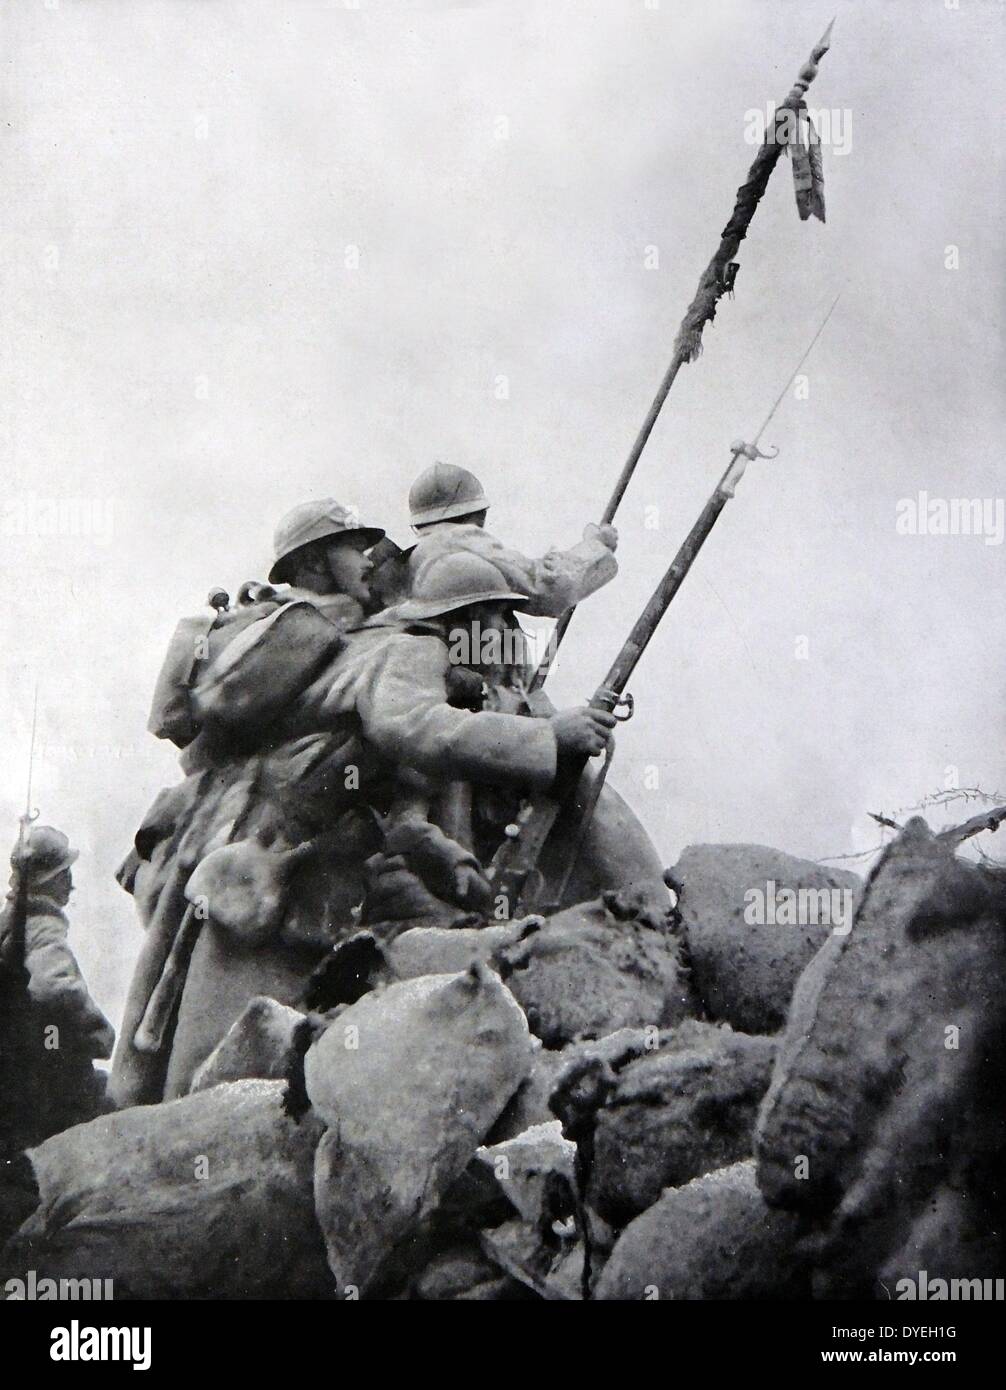 La Seconde Guerre mondiale - 1 soldats français héroïques se lever sur le dessus de leurs barricades vers la ligne de feu allemande au cours de la première bataille de la Marne 1914. Un agent peut être vu porter une norme régimentaire endommagé à rallier les troupes. Banque D'Images